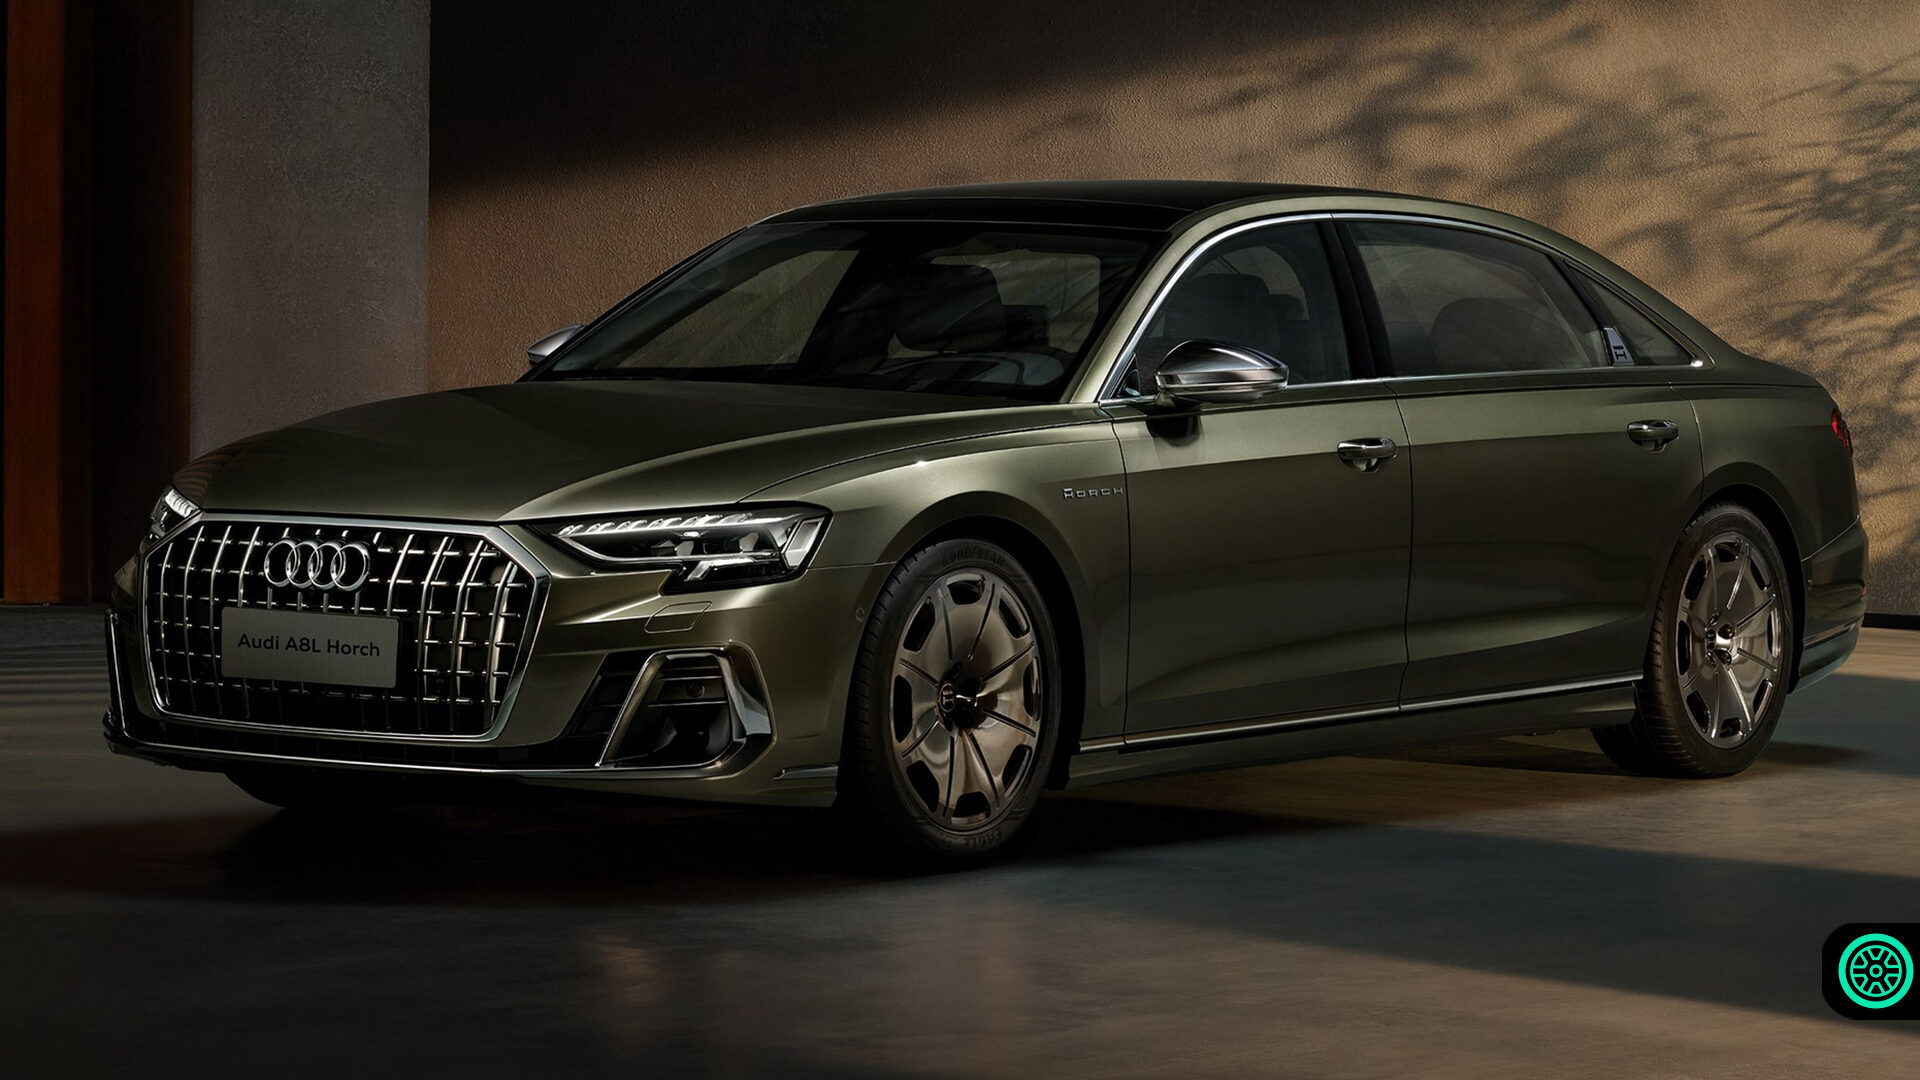 Audi A8 L Horch Founders Edition resmi olarak tanıtıldı! 13